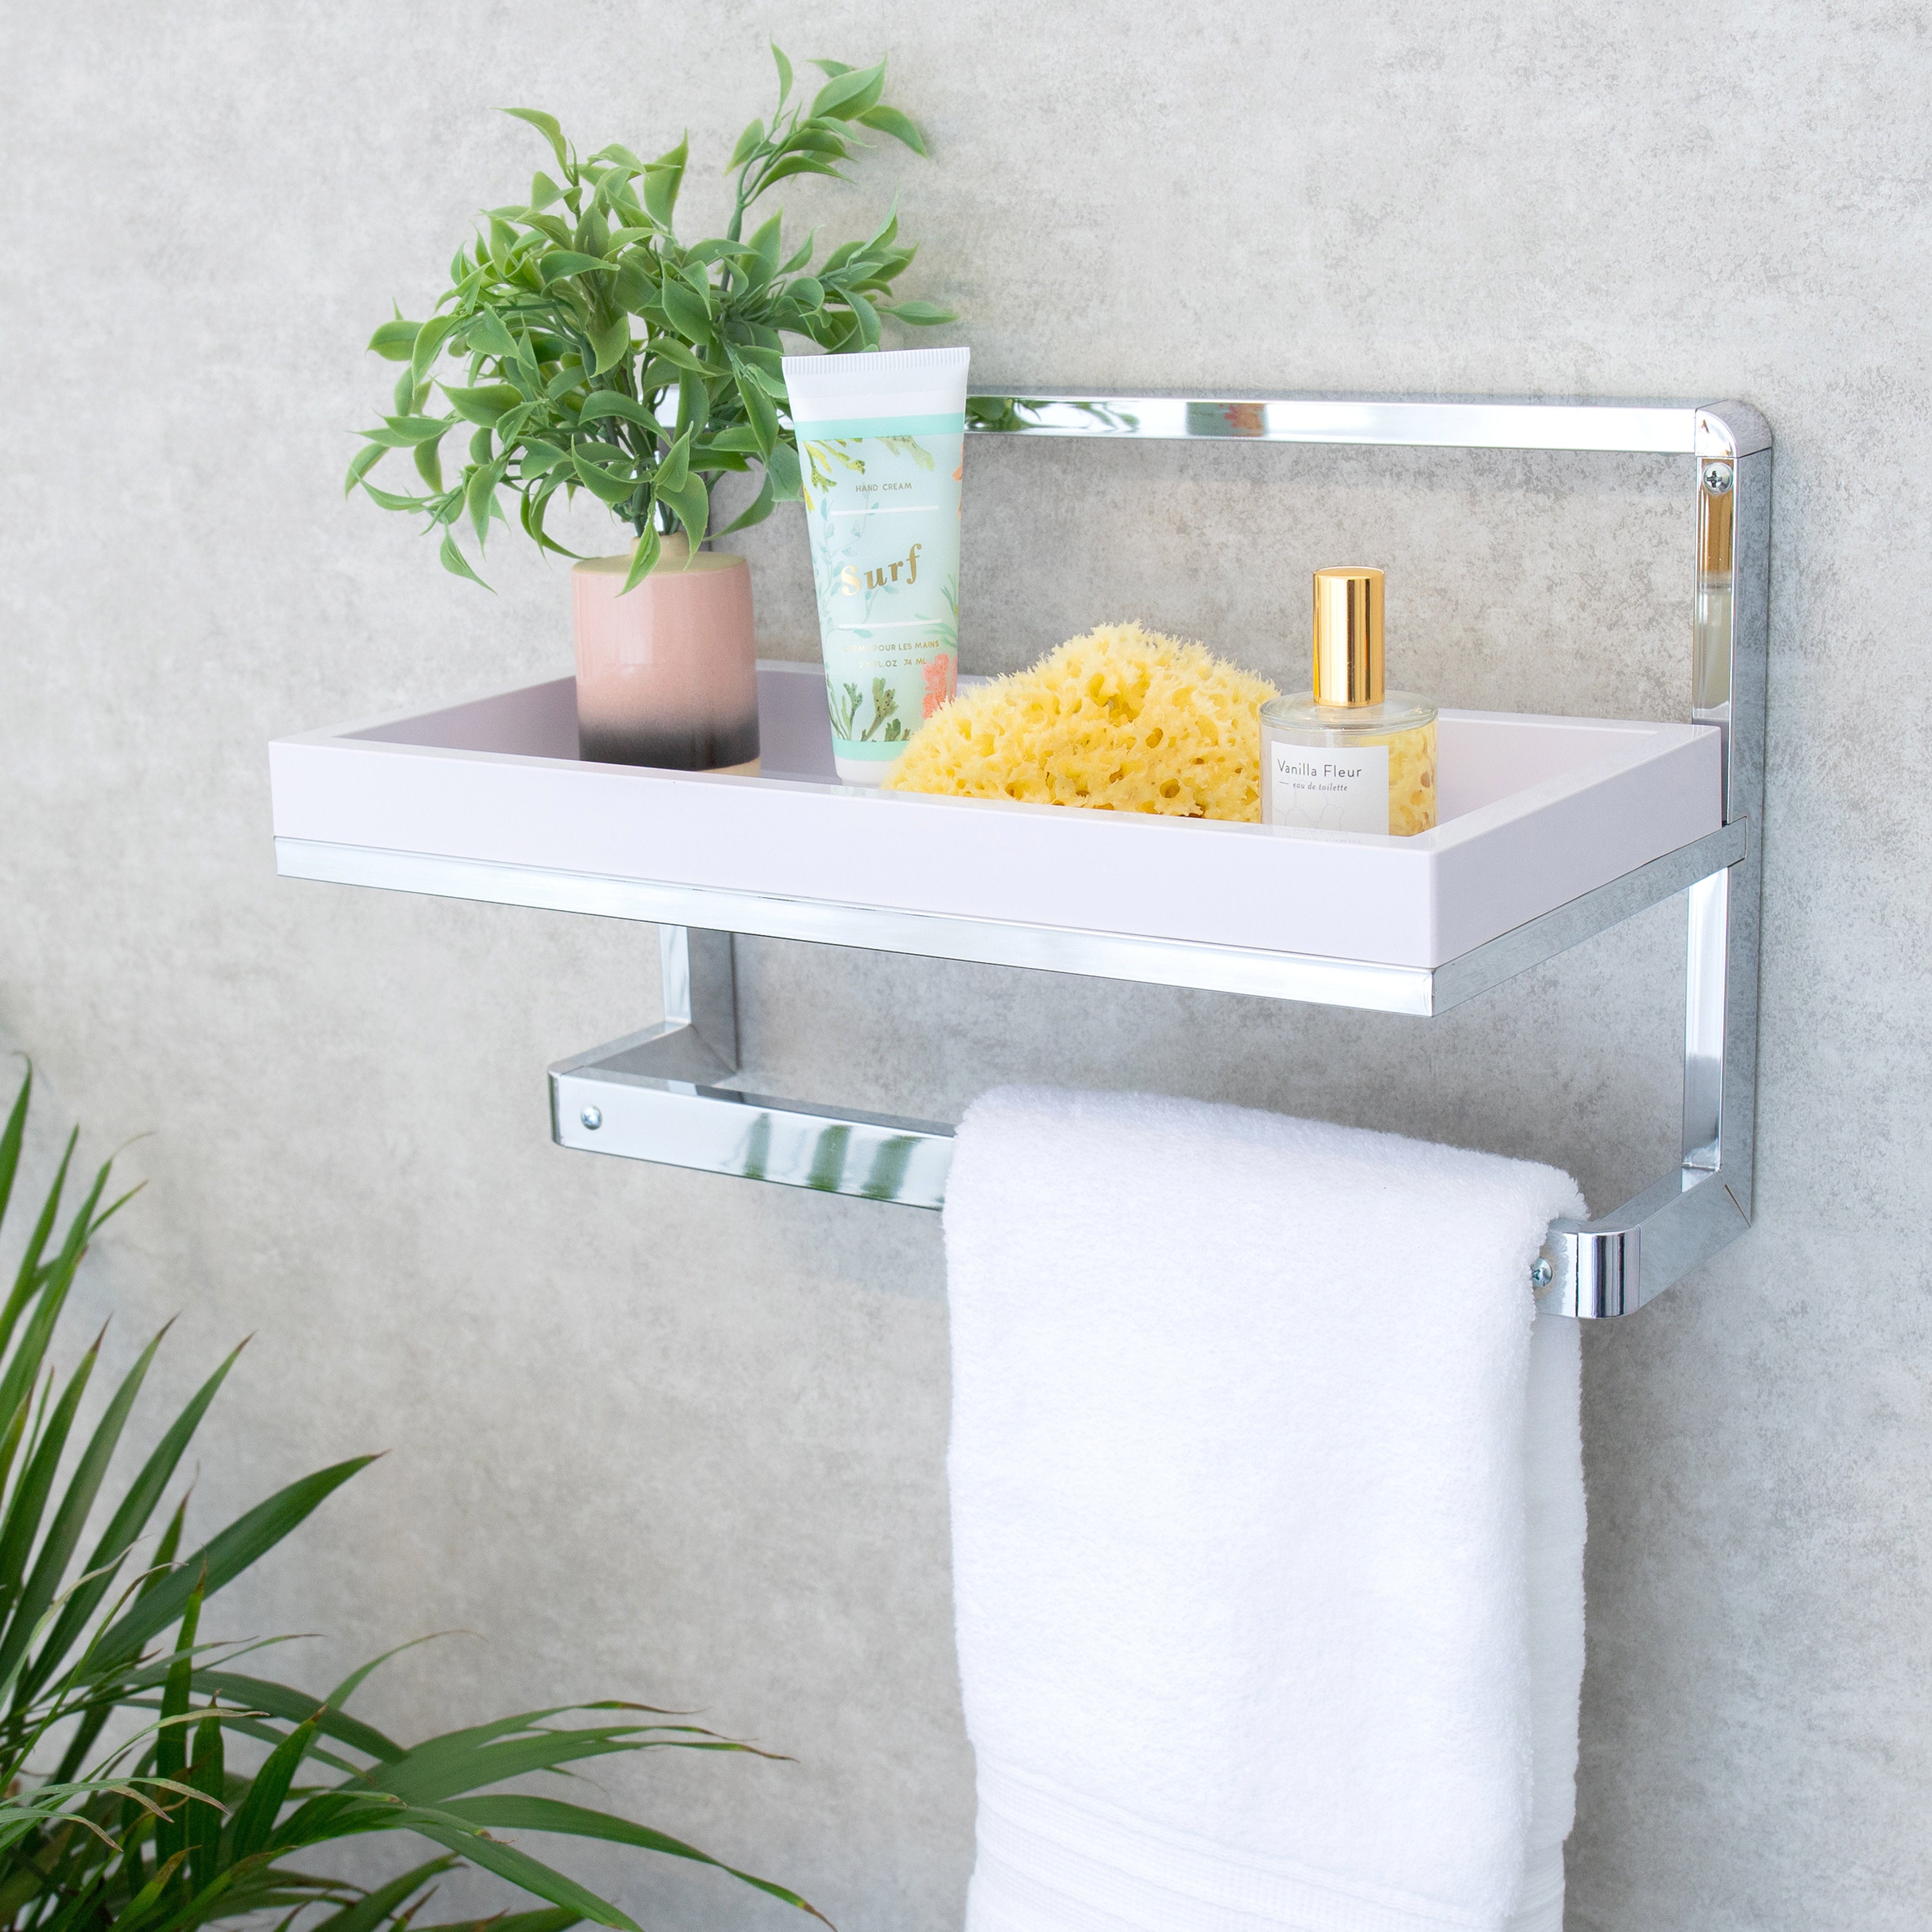 10 DIY Towel Rack Ideas for Your Spa Bathroom | The Family Handyman